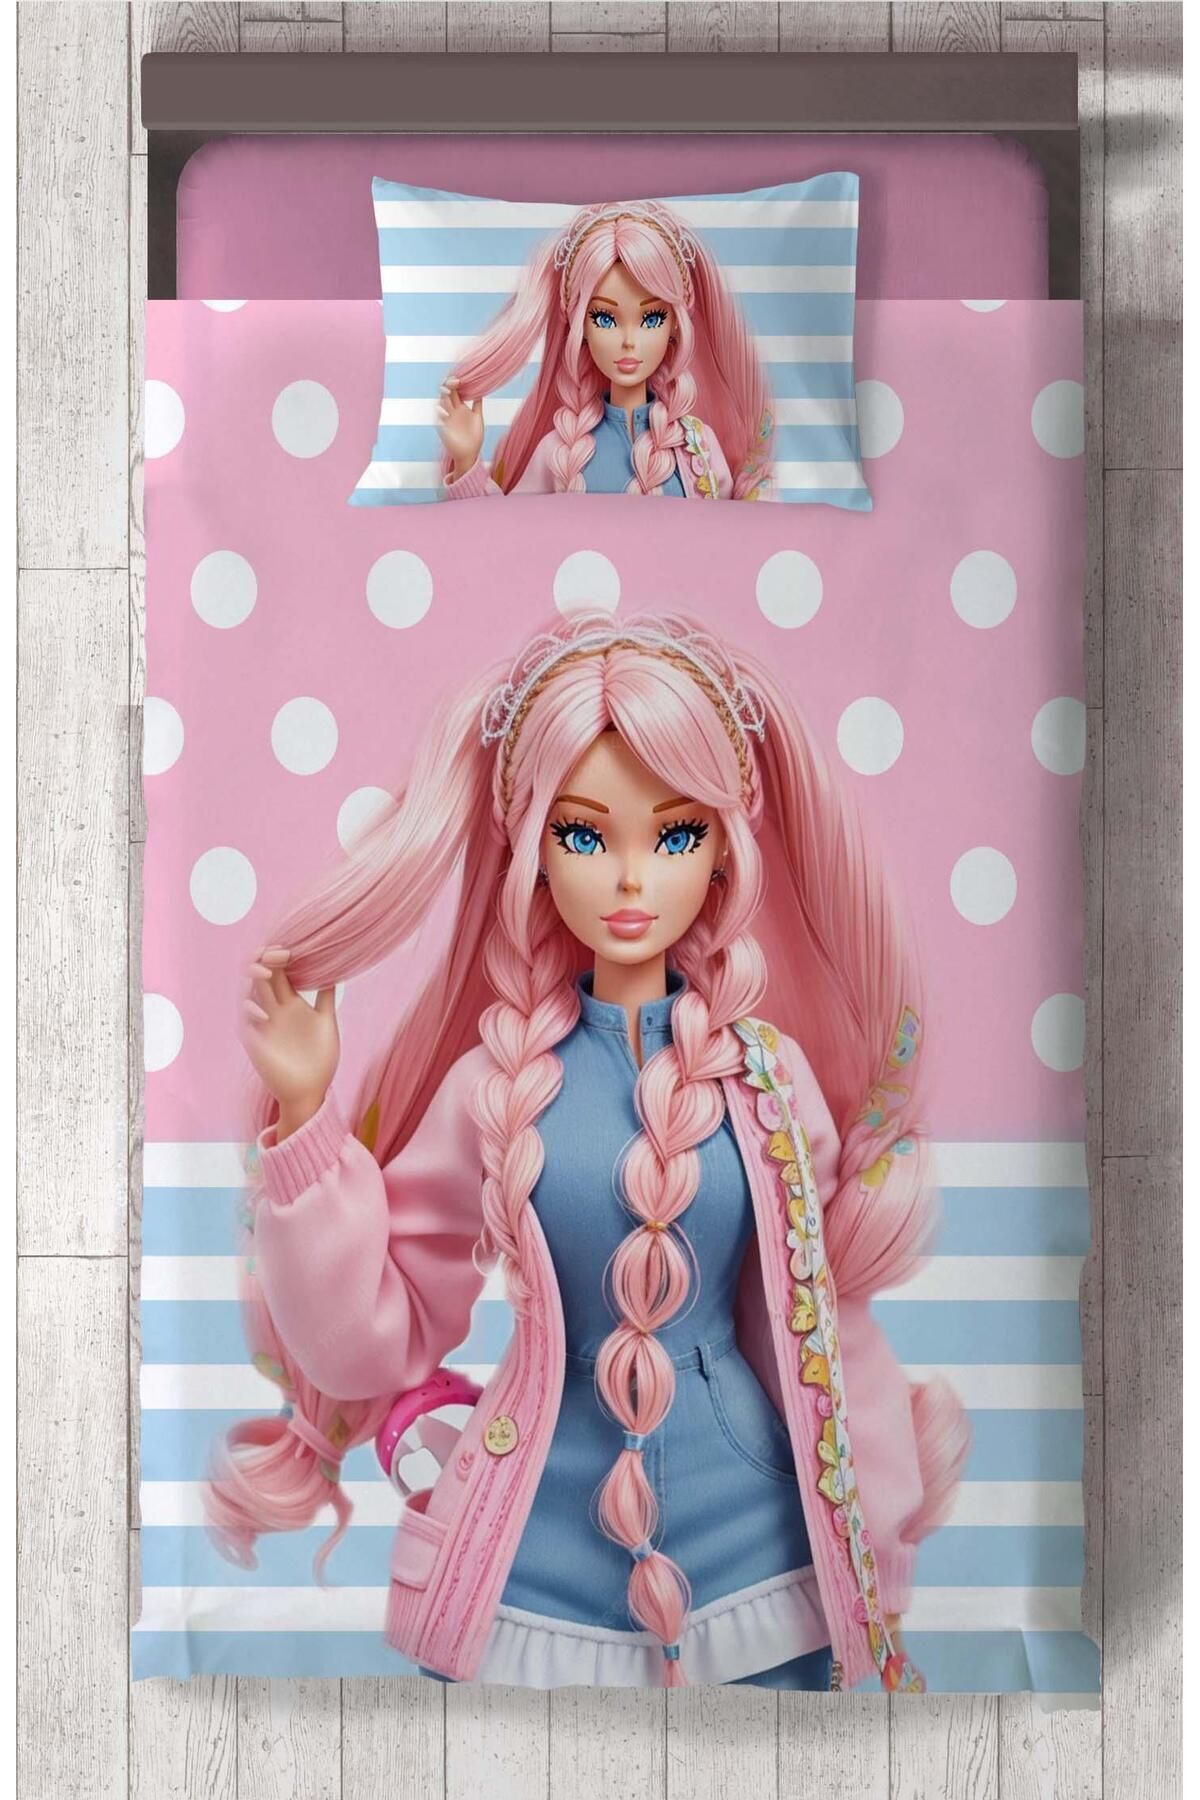 Ceritti Kız Bebek ve Çocuk Odası için Barbie Desenli İsim Yazdırılabilir Renkli 2 Parça Yatak Örtüsü Seti-53